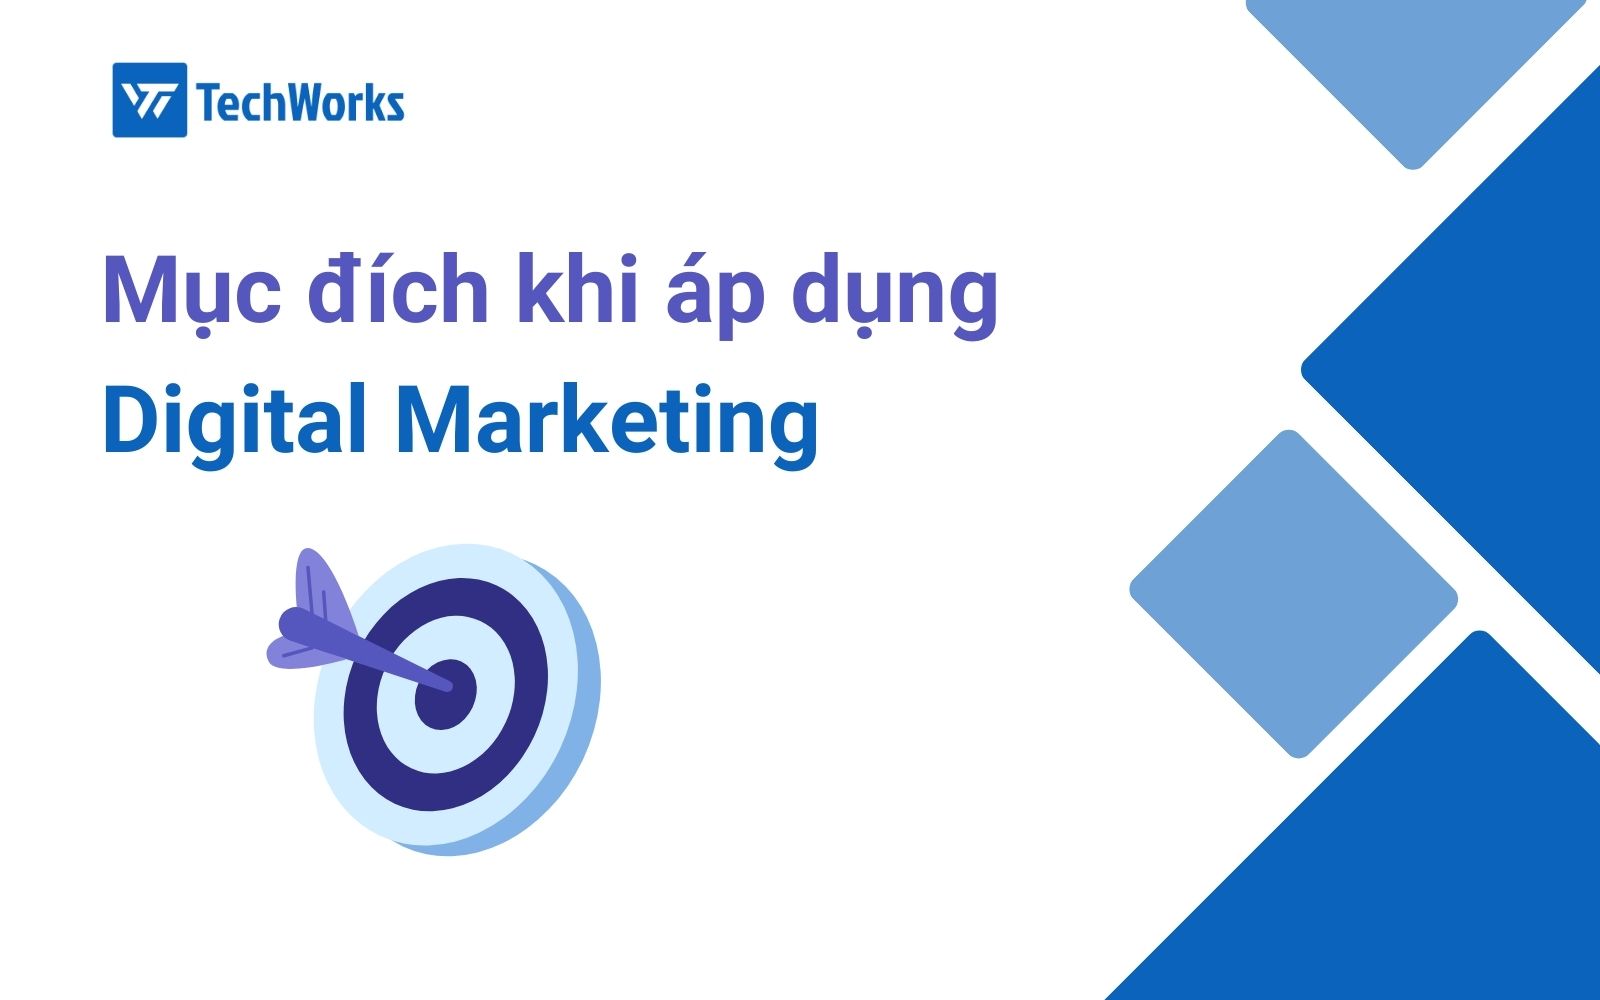 Mục đích khi áp dụng Digital Marketing là gì?